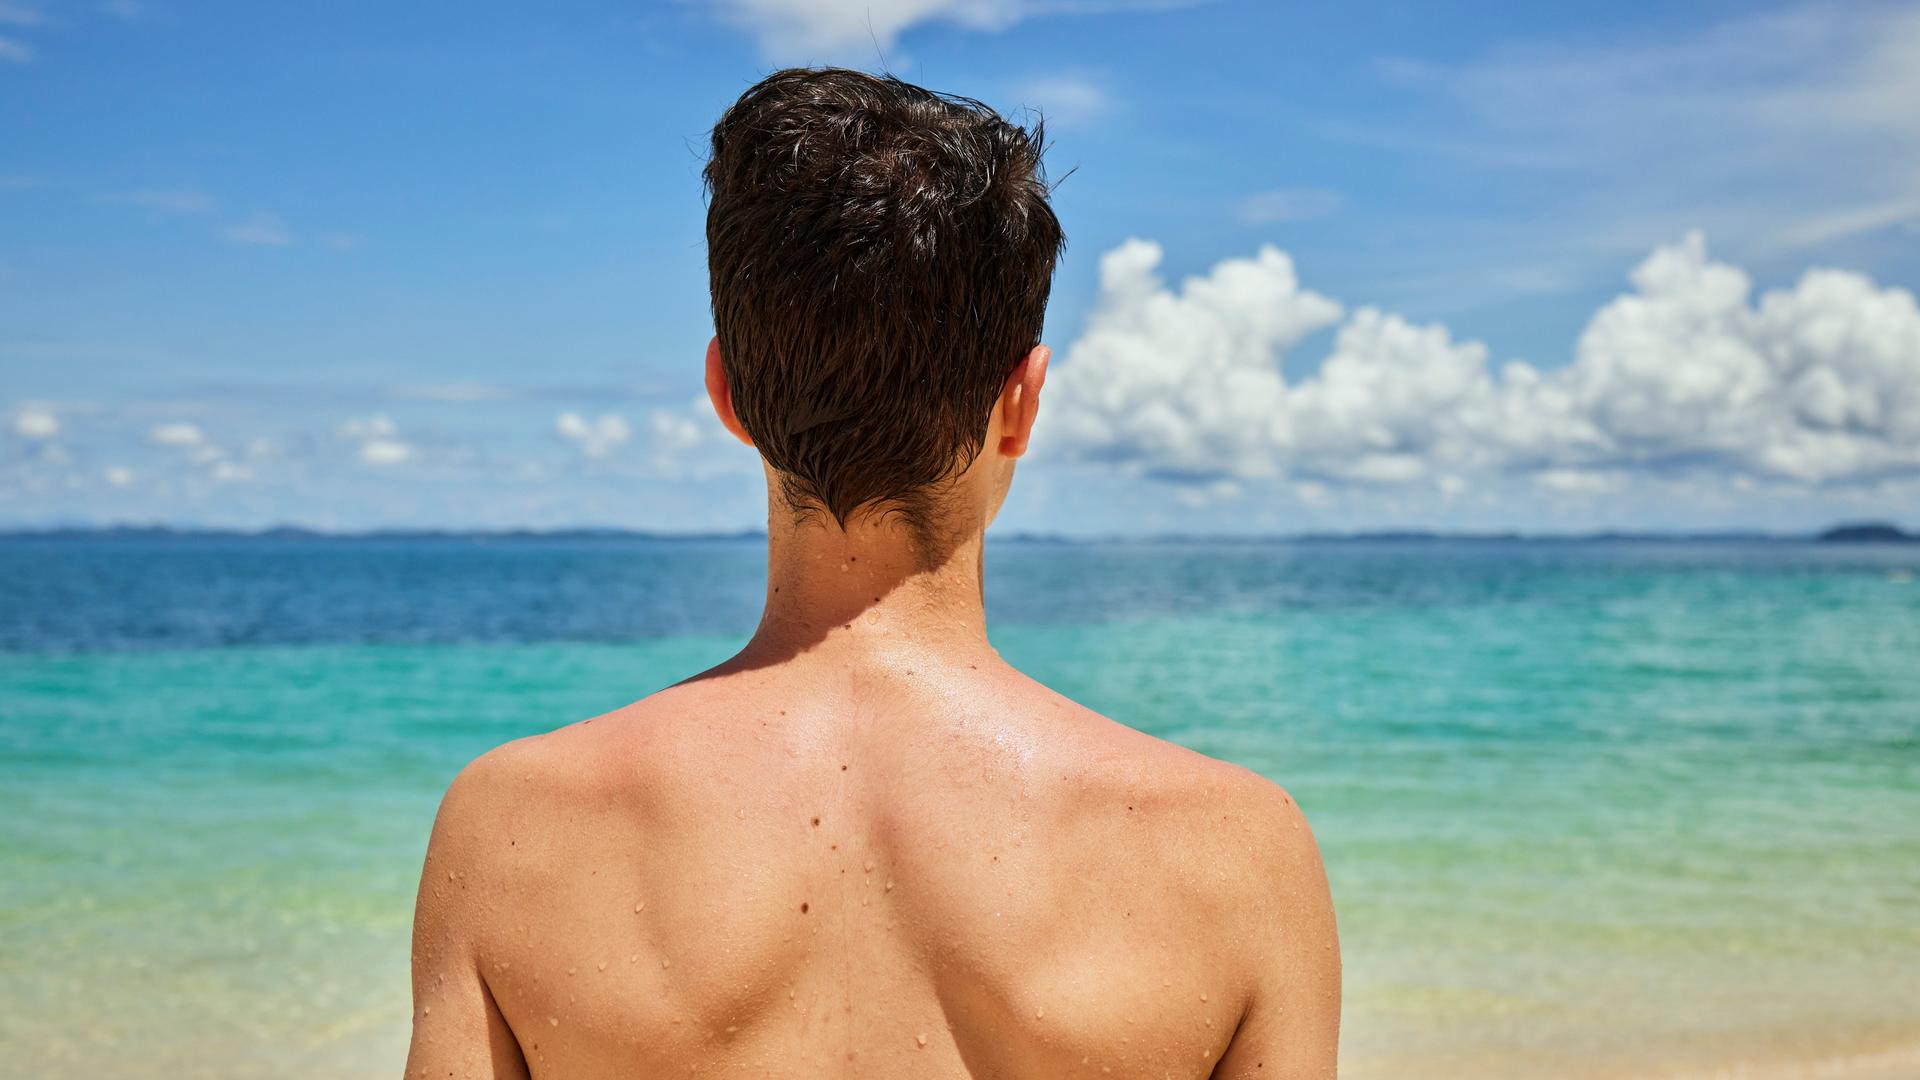 Hautkrebsrate steigt, Dermatologe gibt Tipps zum Sonnenschutz